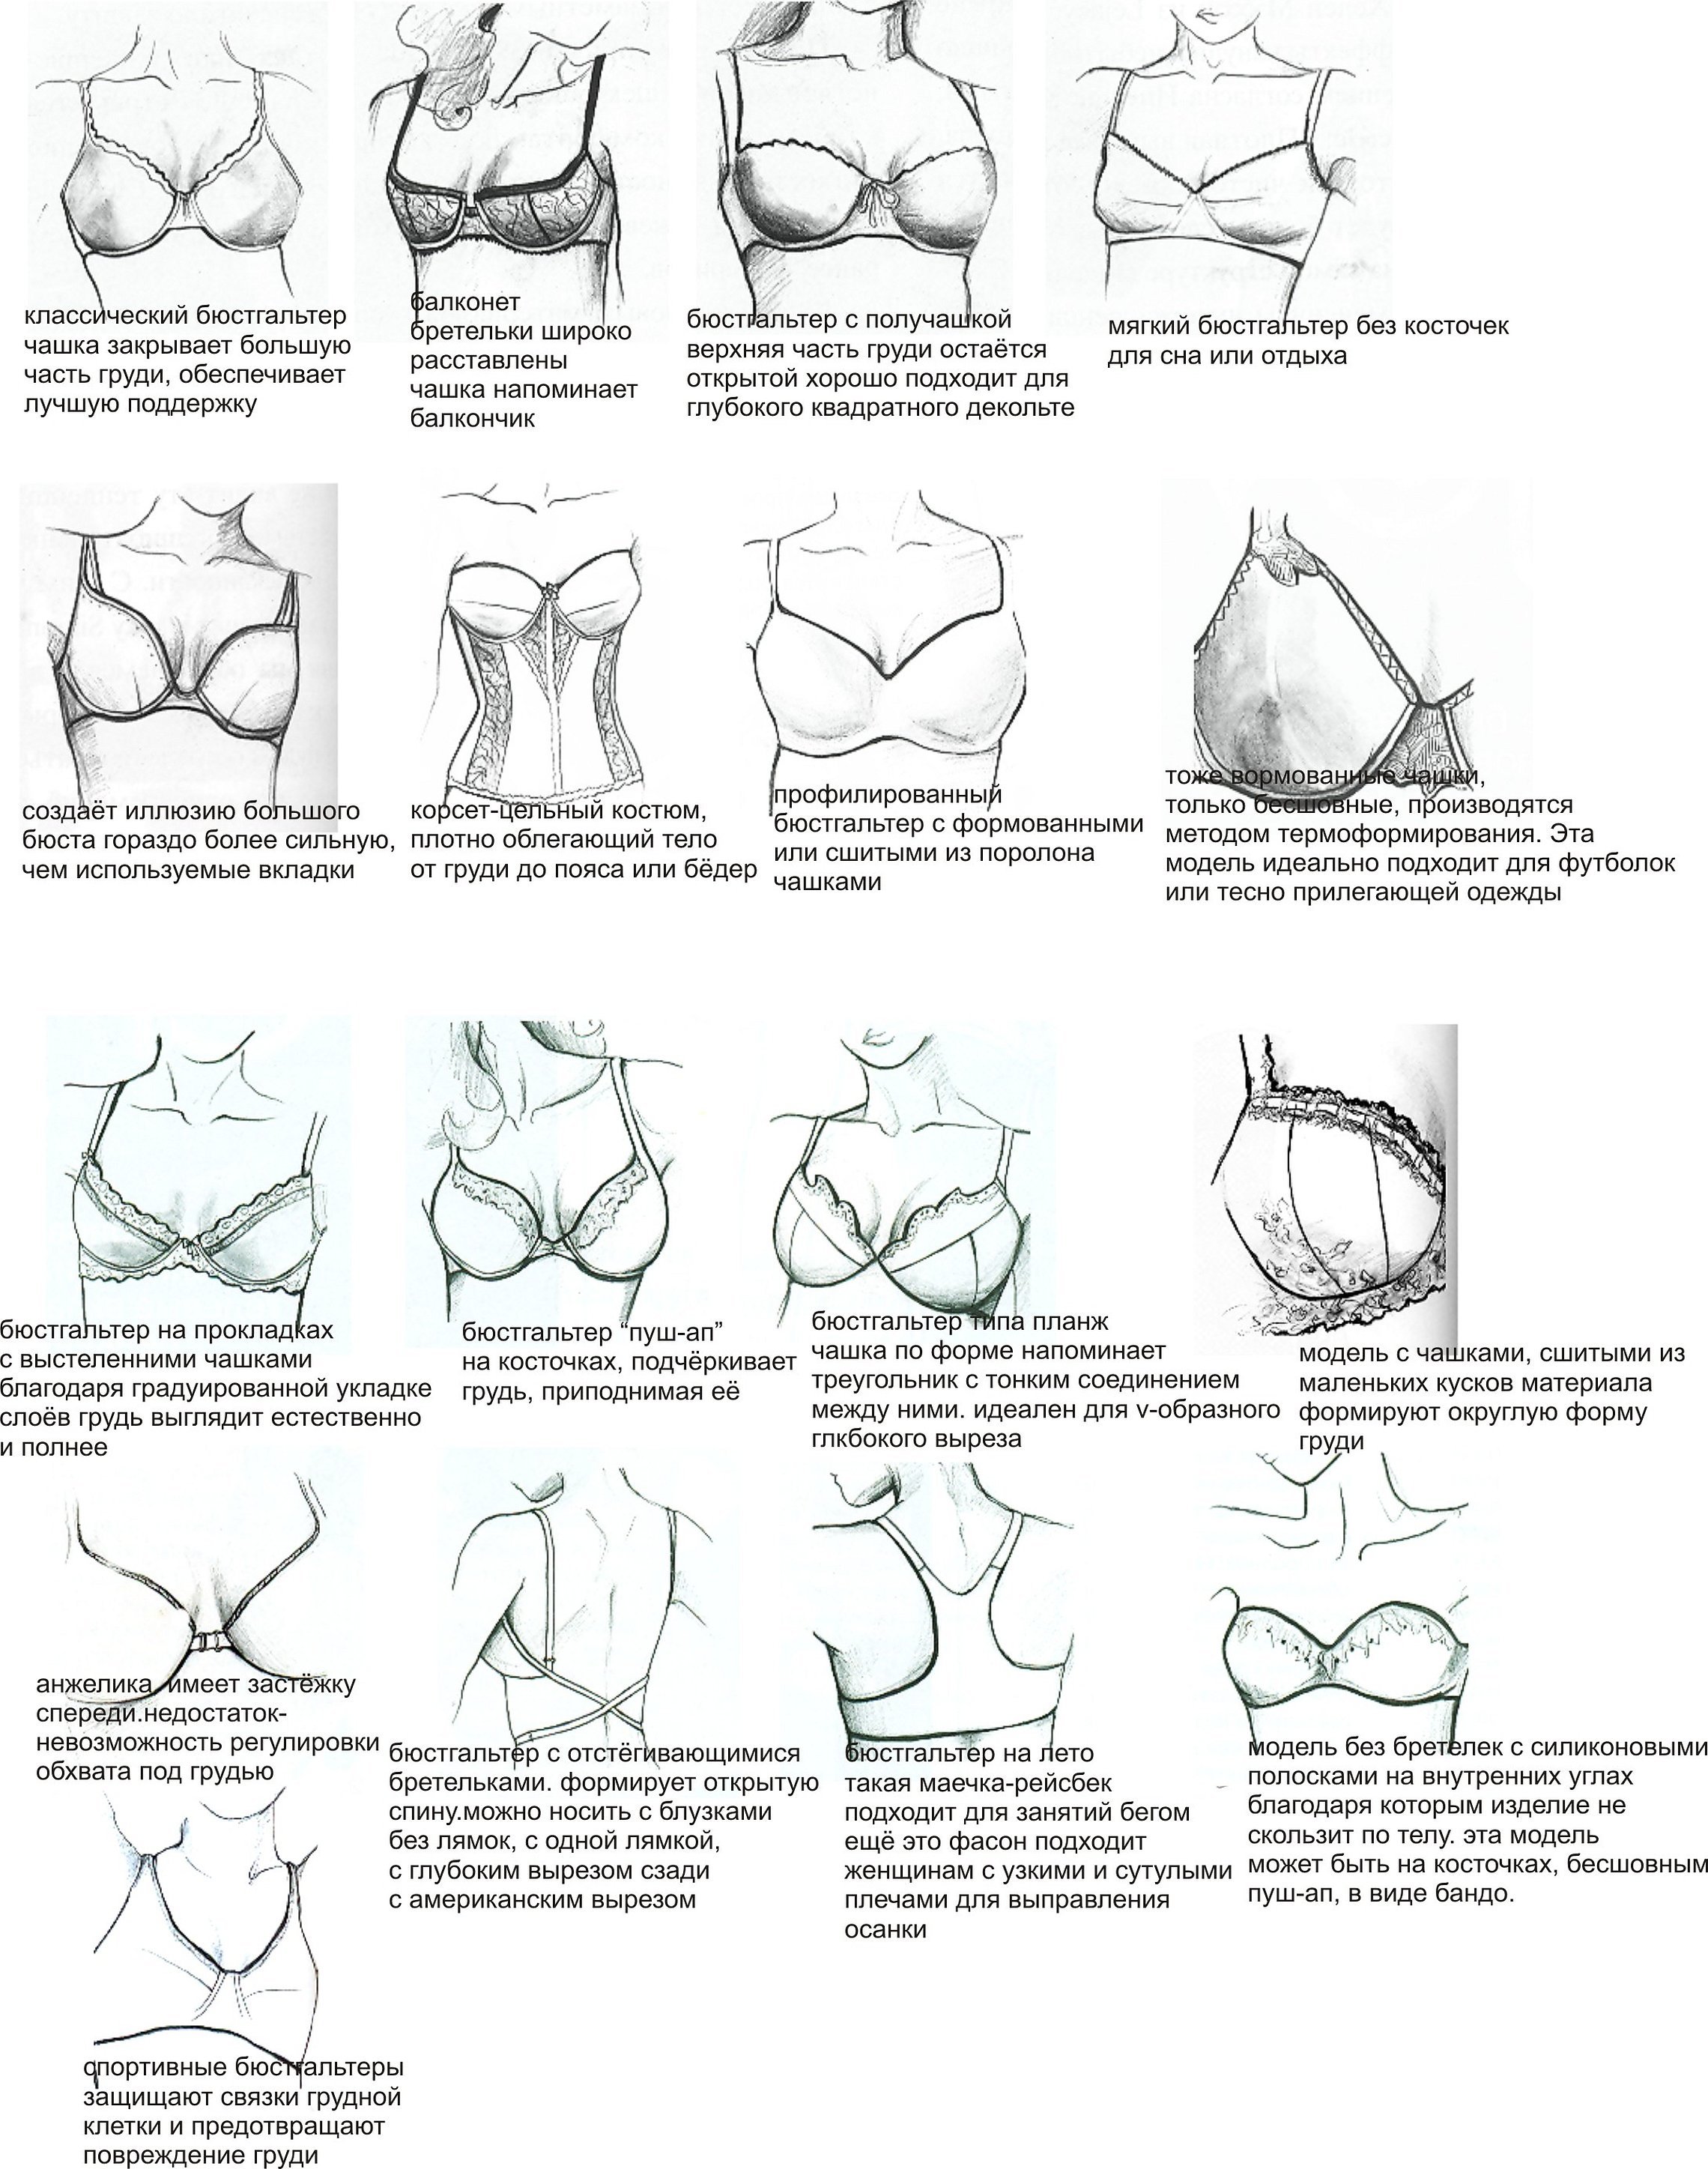 Описание женской груди